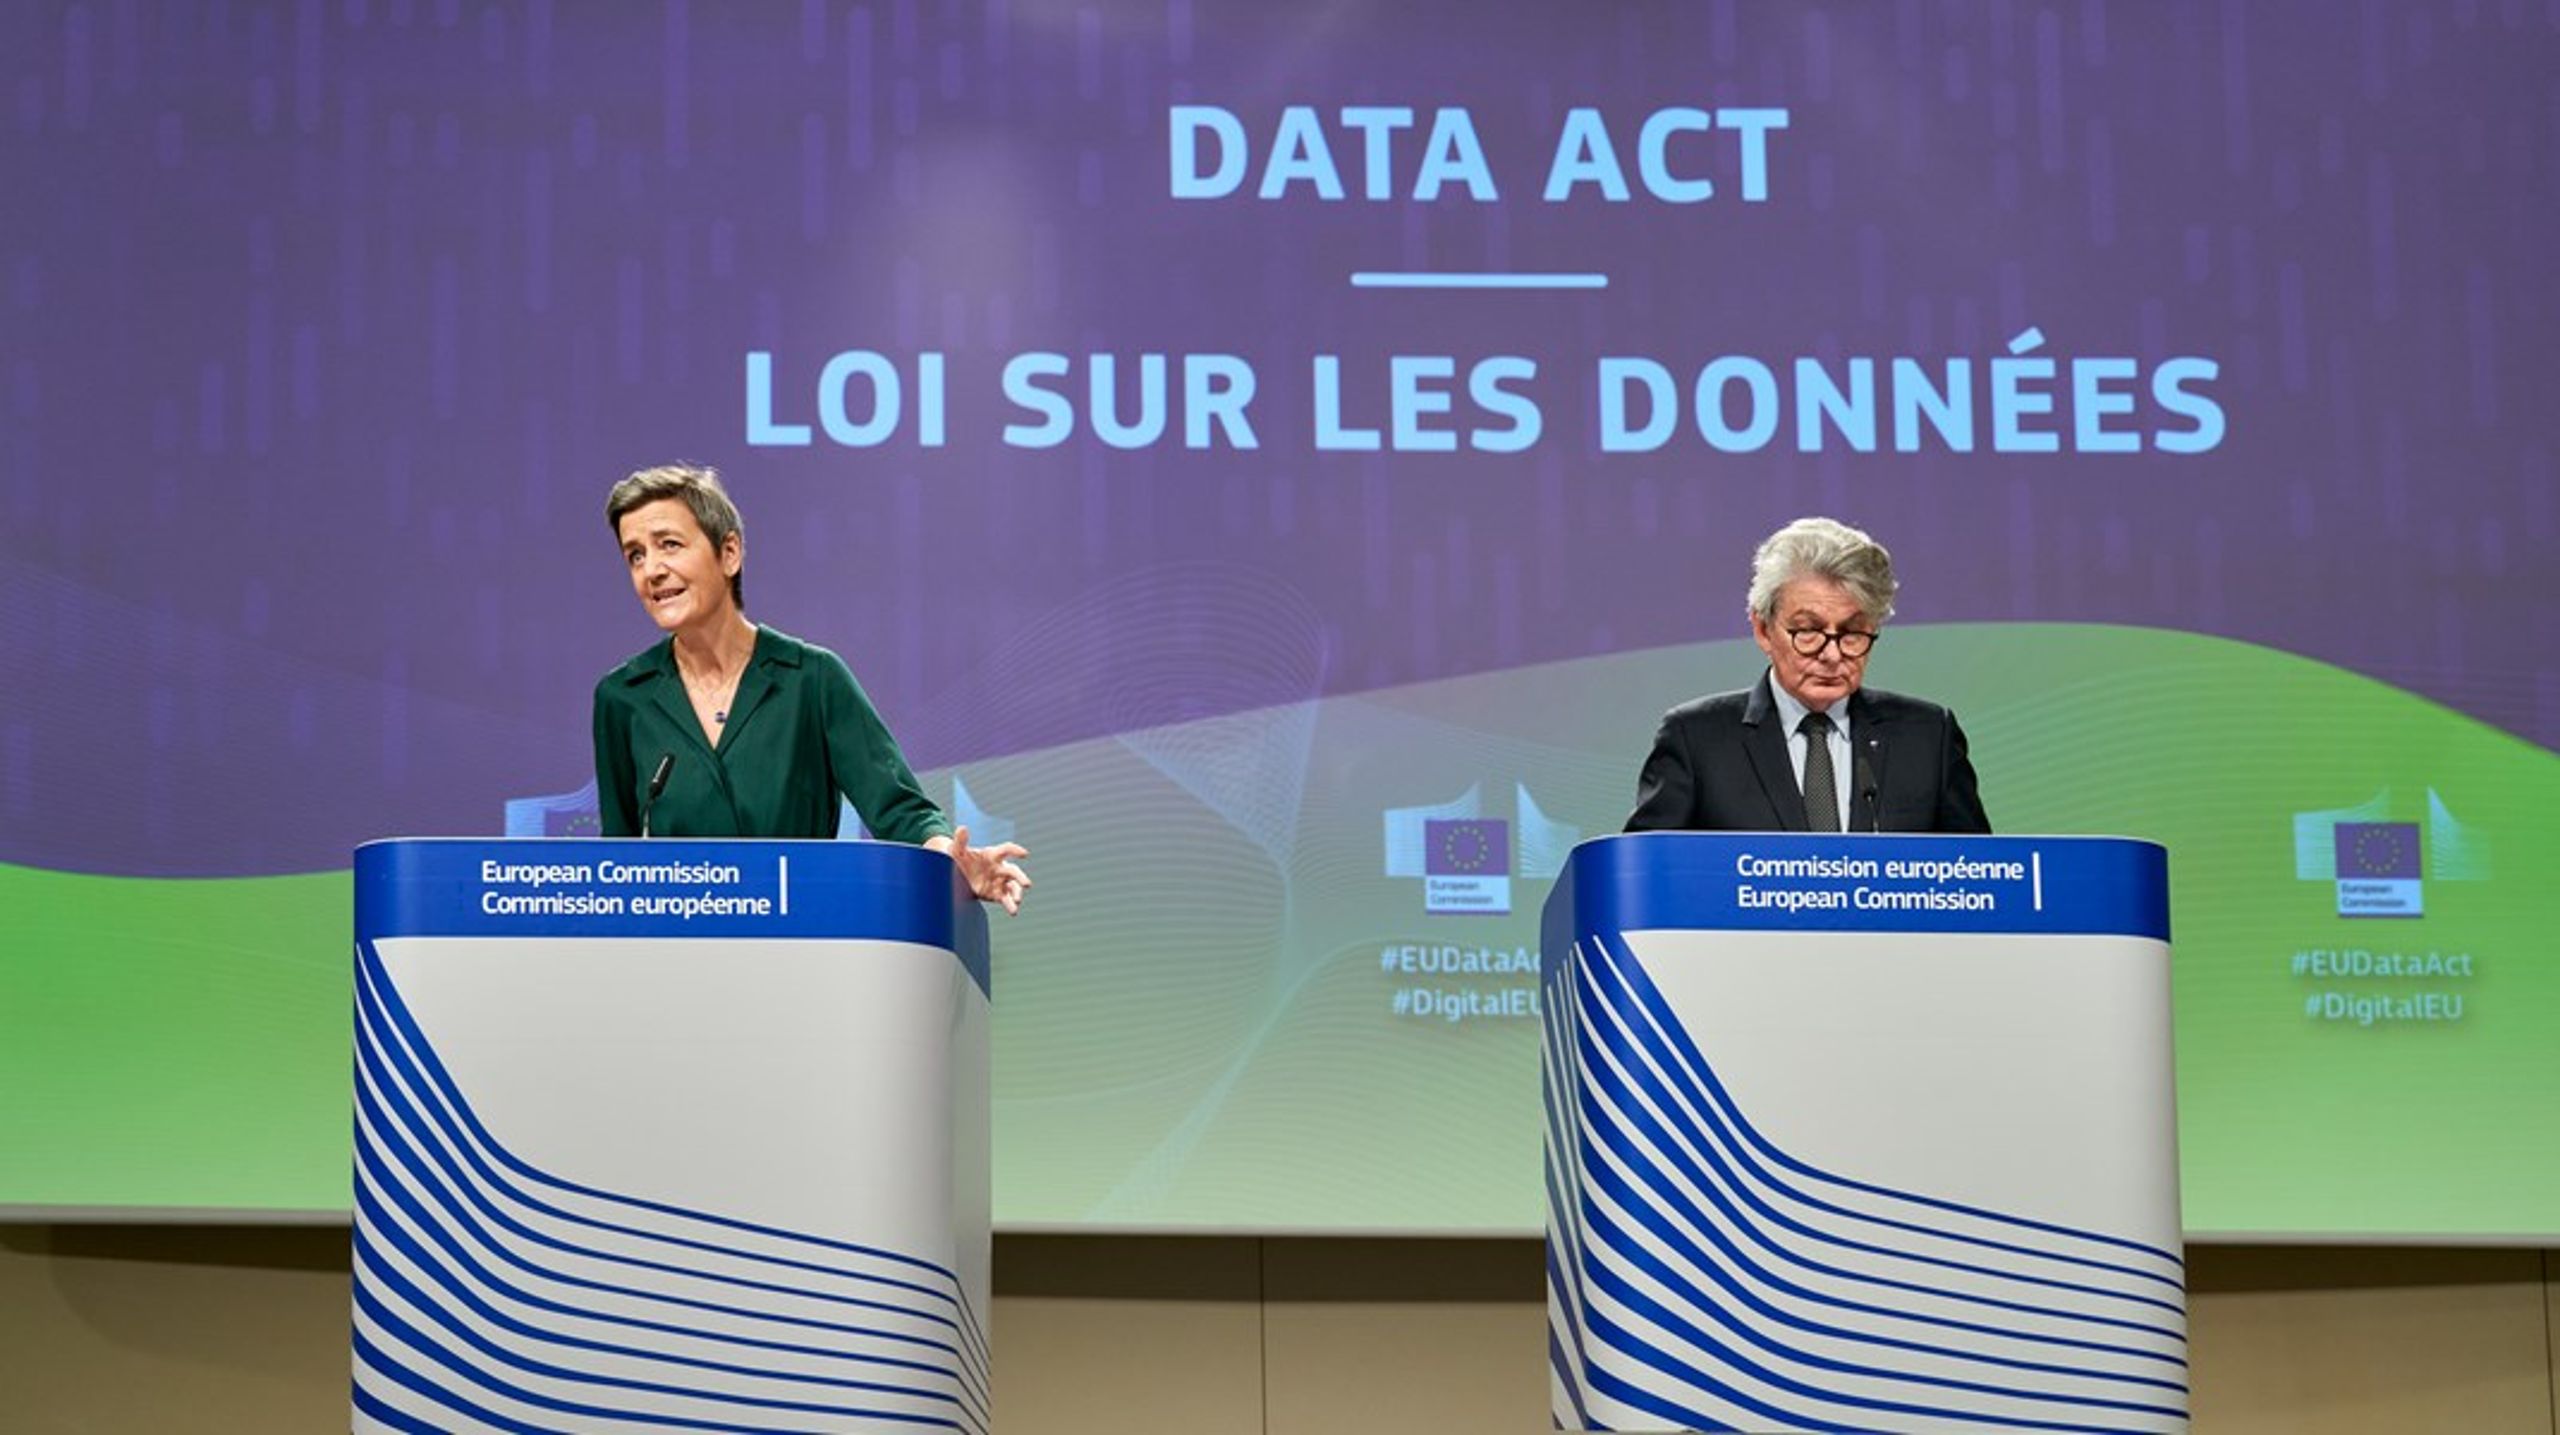 Dataforordningen er næsten en realitet efter Europa-Parlamentet formelt har godkendt aftalen. Nu mangler kun Rådets godkendelse. Her ses en tidligere briefing fra Kommissionen med Margrethe Vestager og Thierry Breton.